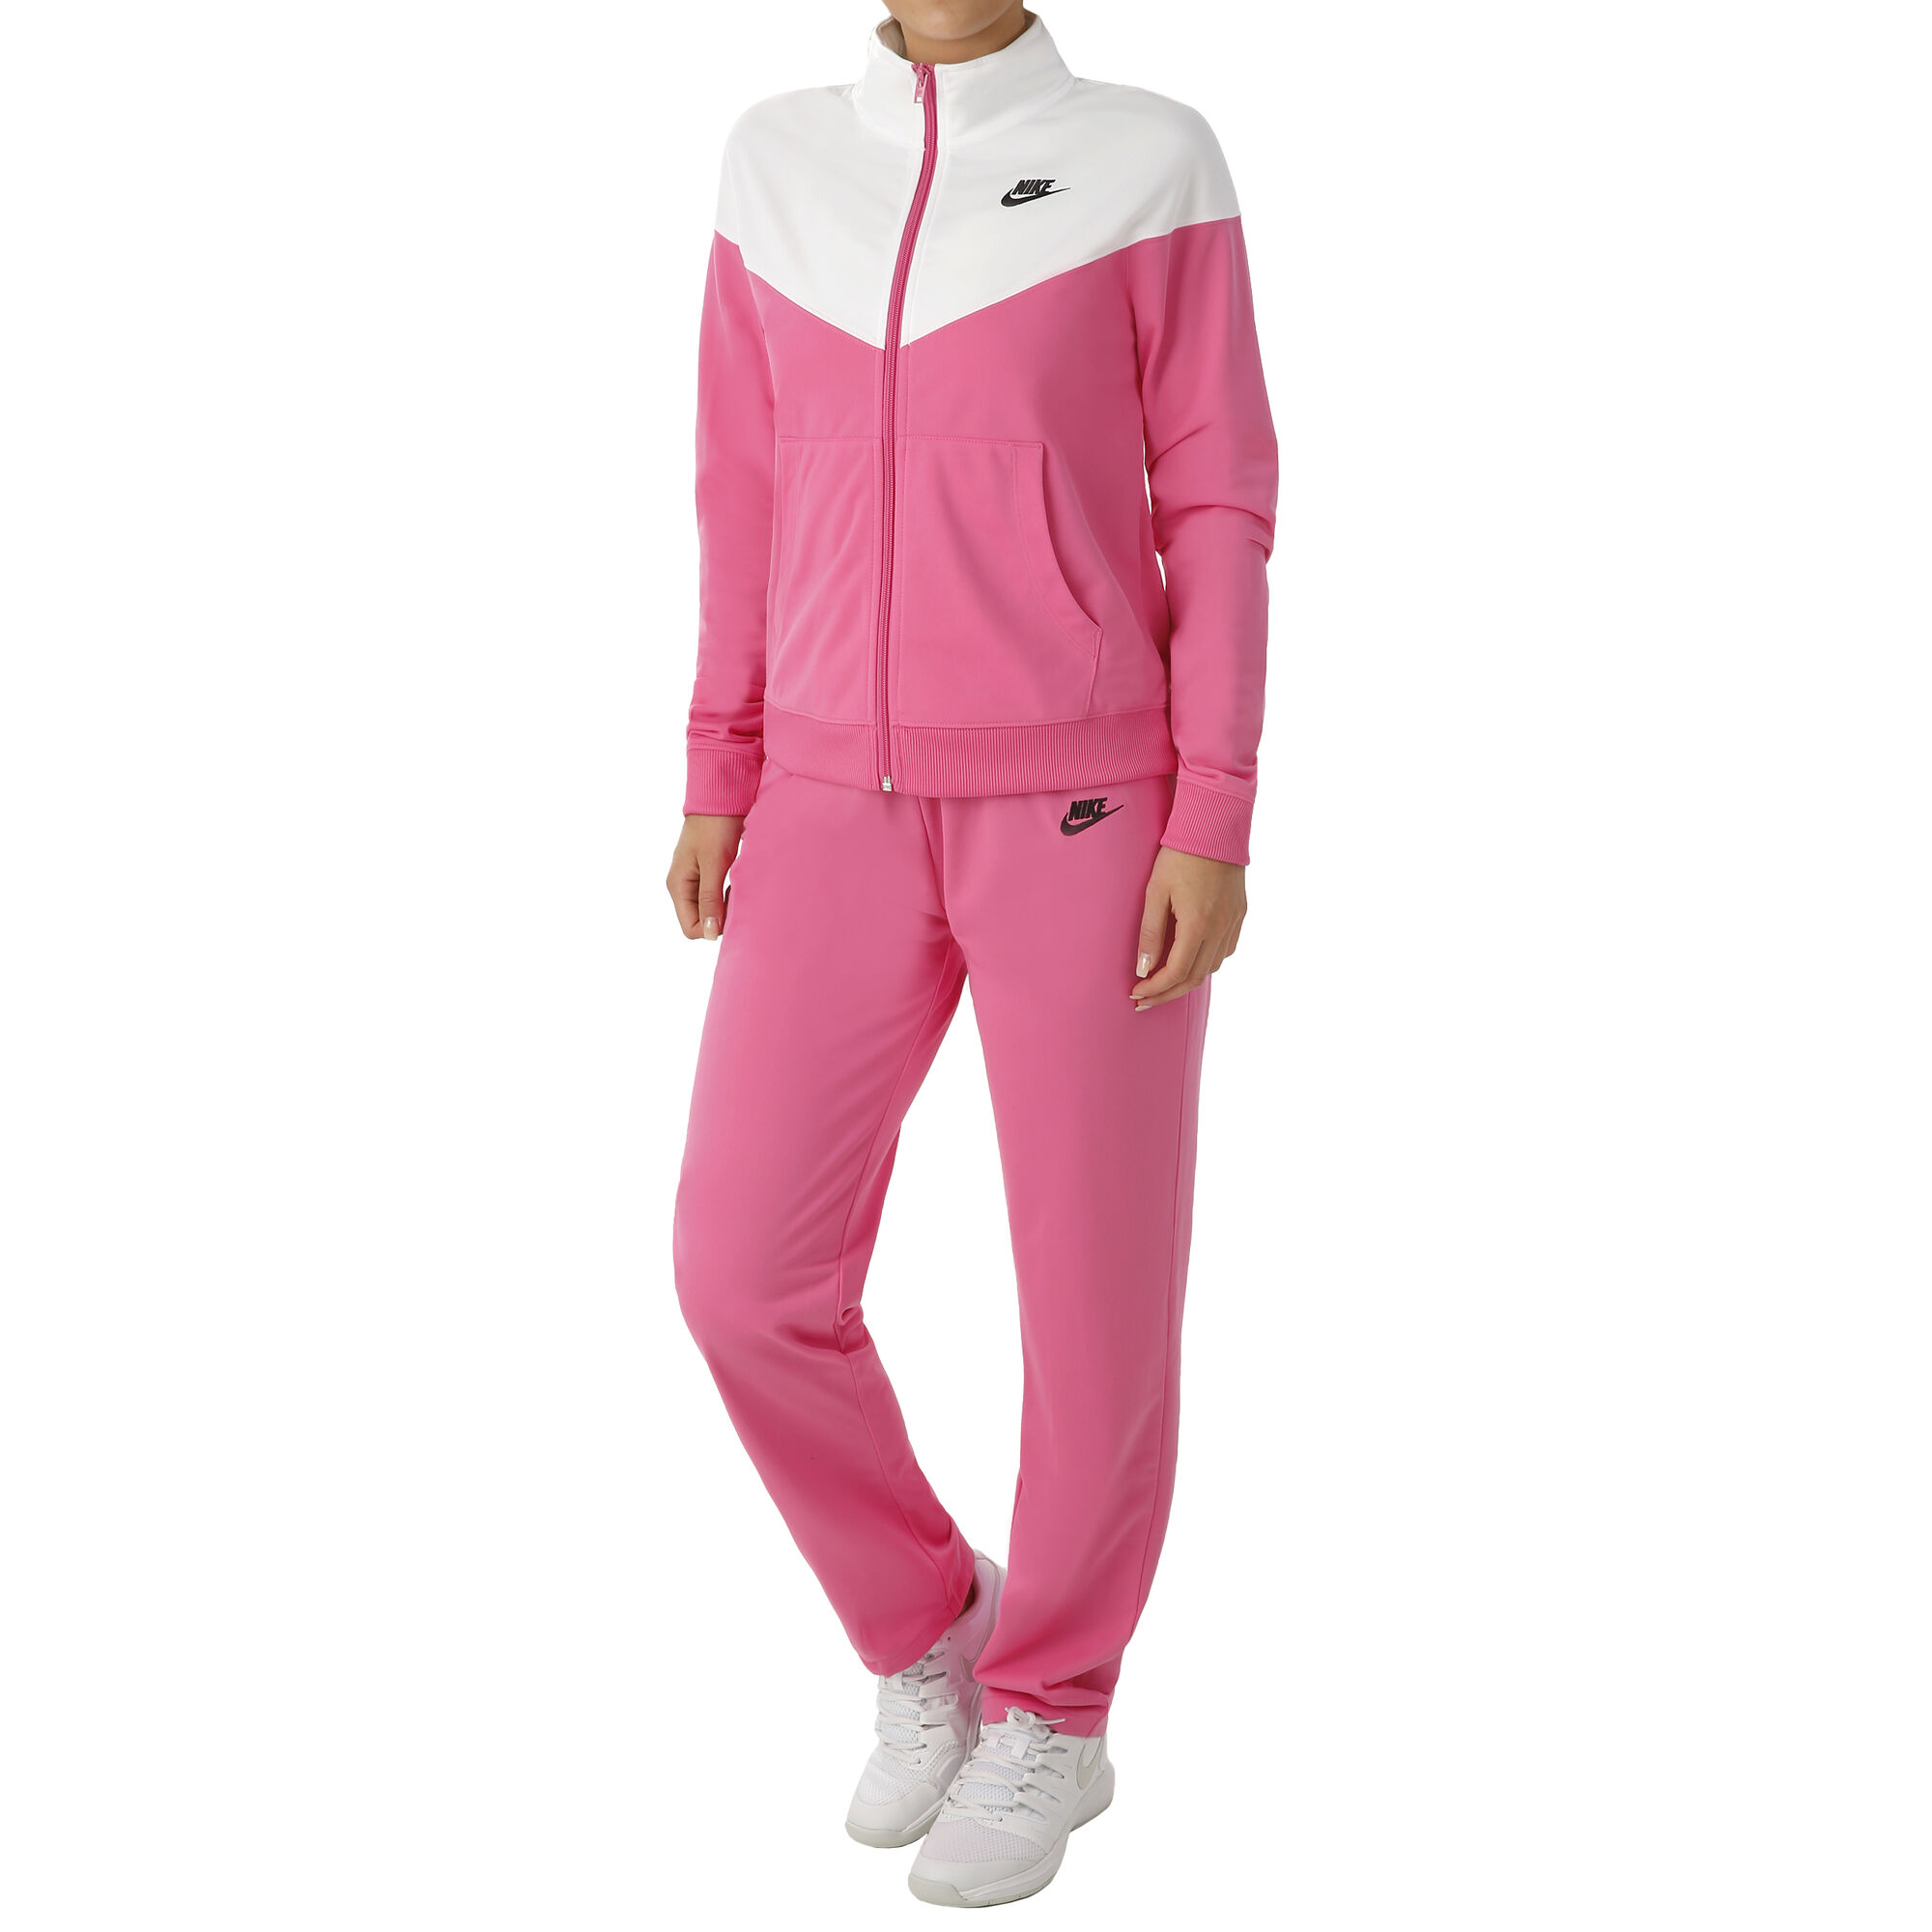 Bezit Houden bijtend Nike Sportswear Trainingsanzug Damen - Pink, Weiß online kaufen |  Tennis-Point